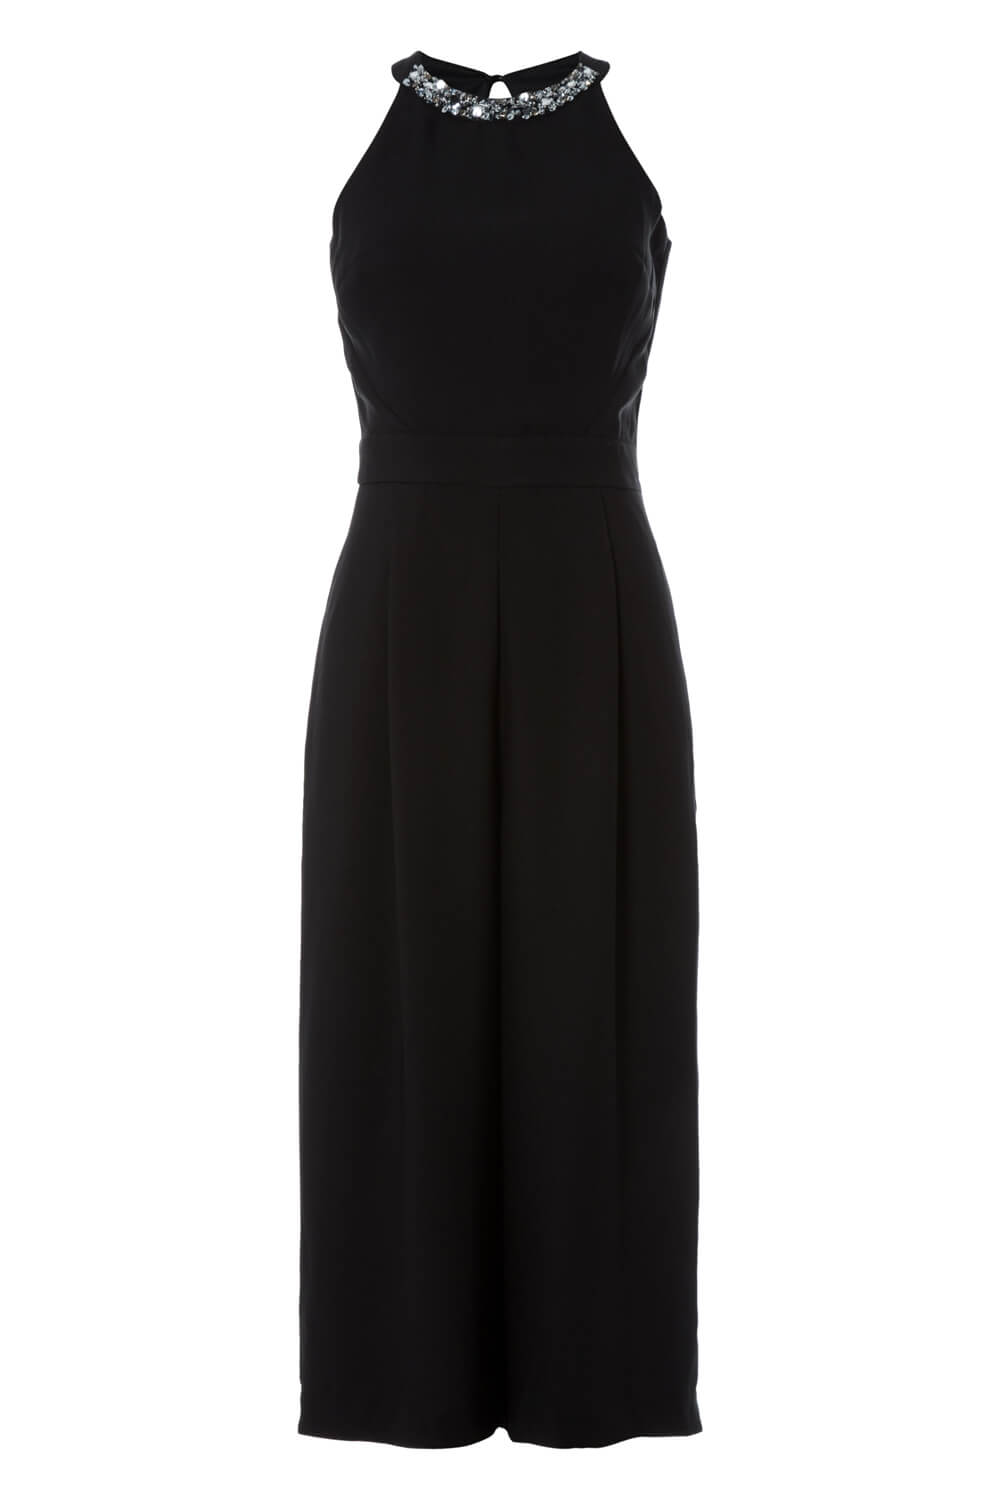 Black Embellished Culotte Jumpsuit, Image 5 of 5